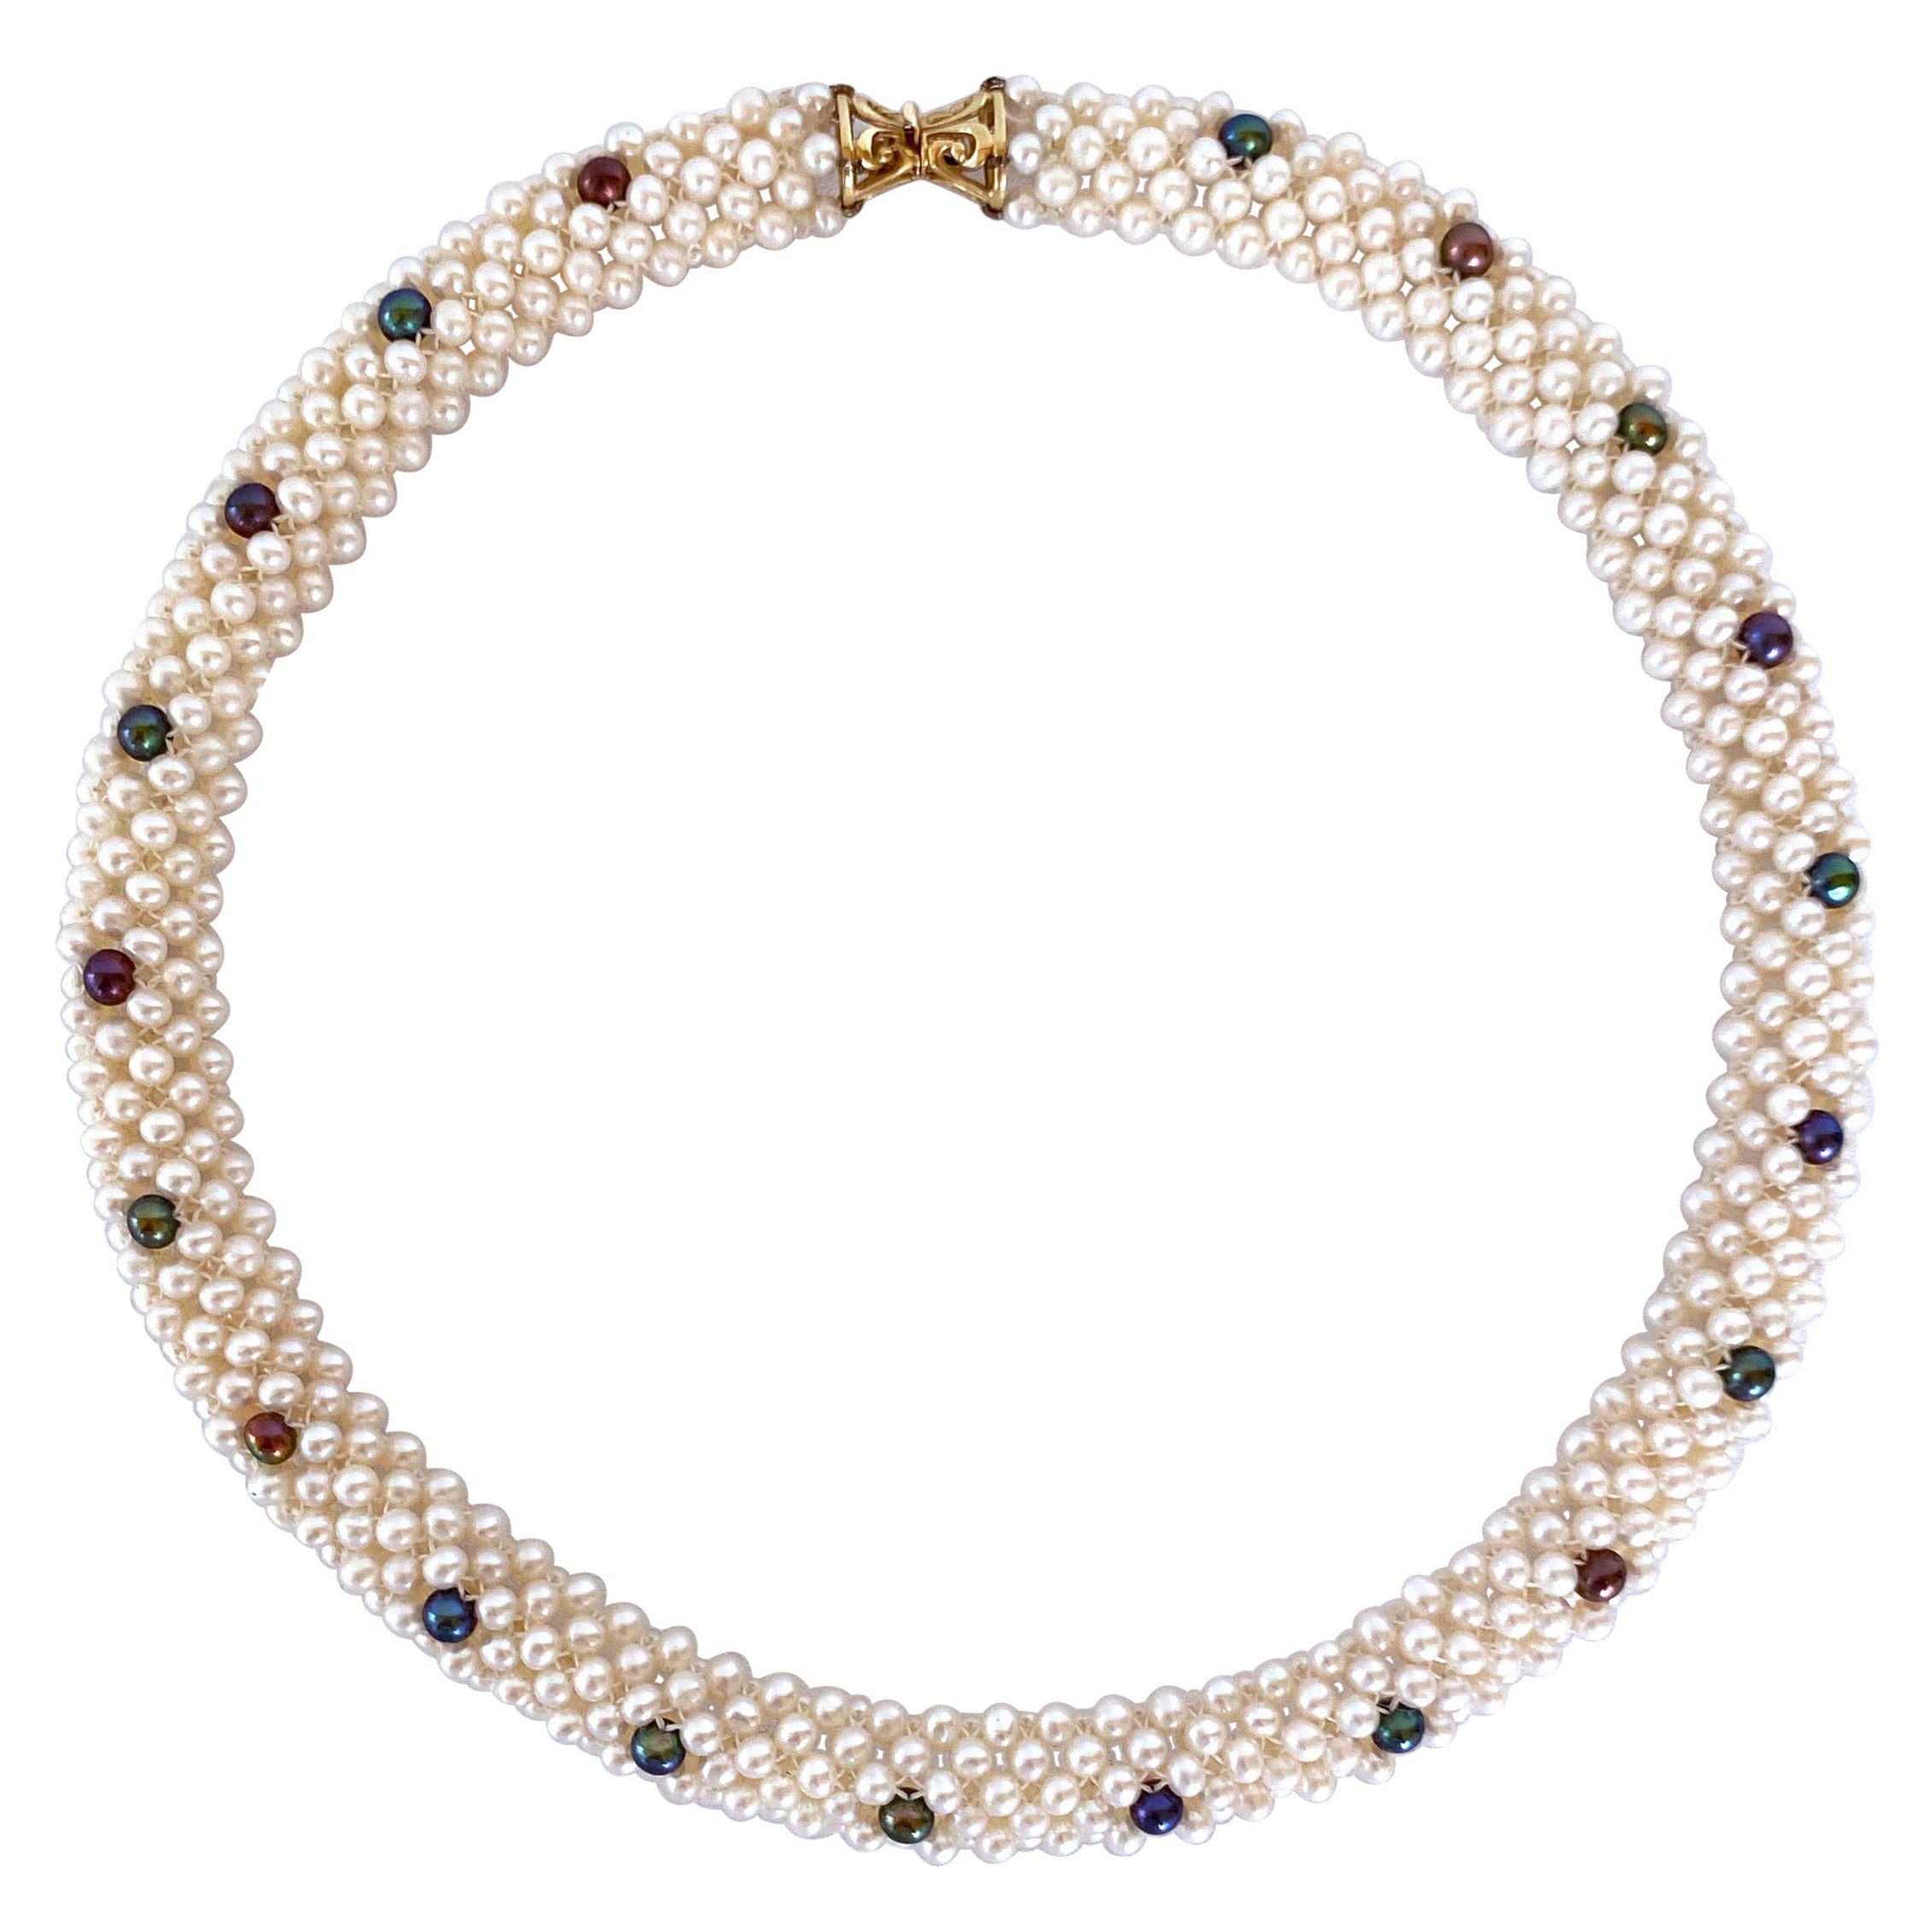 Marina J. Gewebte Perlen-Seil-Halskette mit schwarzen Perlen-Akzenten & 14k Gelbgold